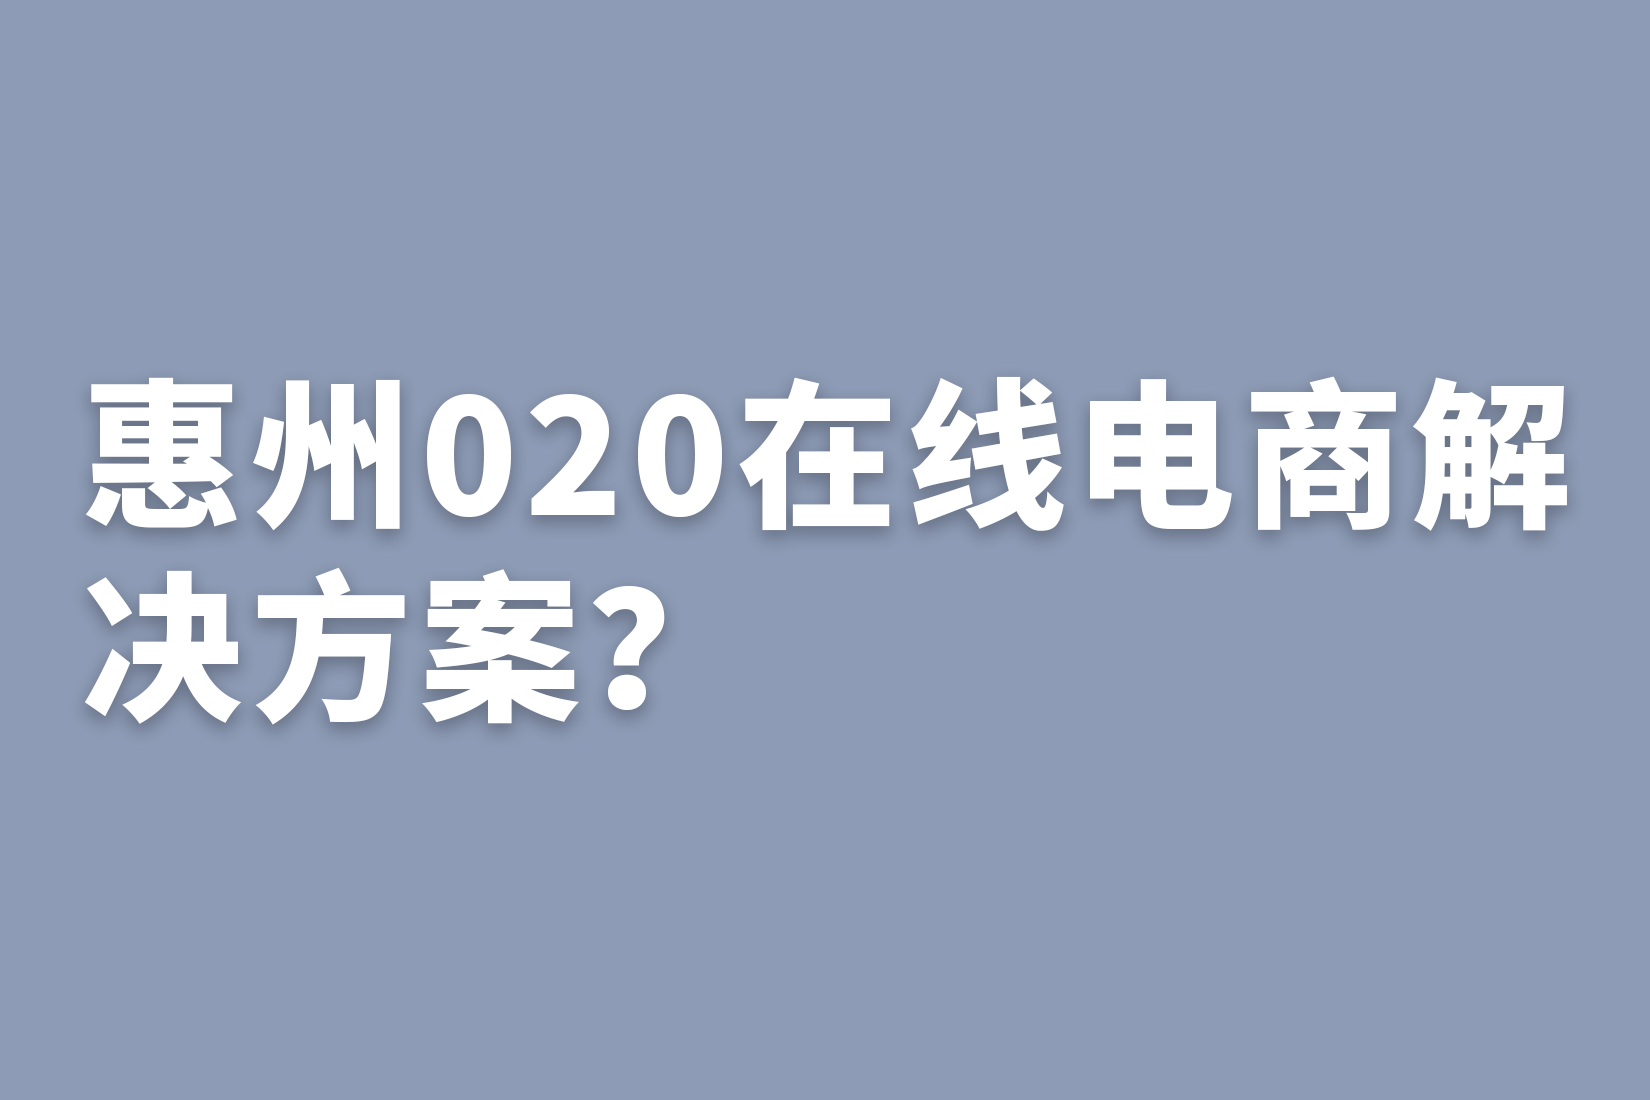 惠州020在线电商解决方案？